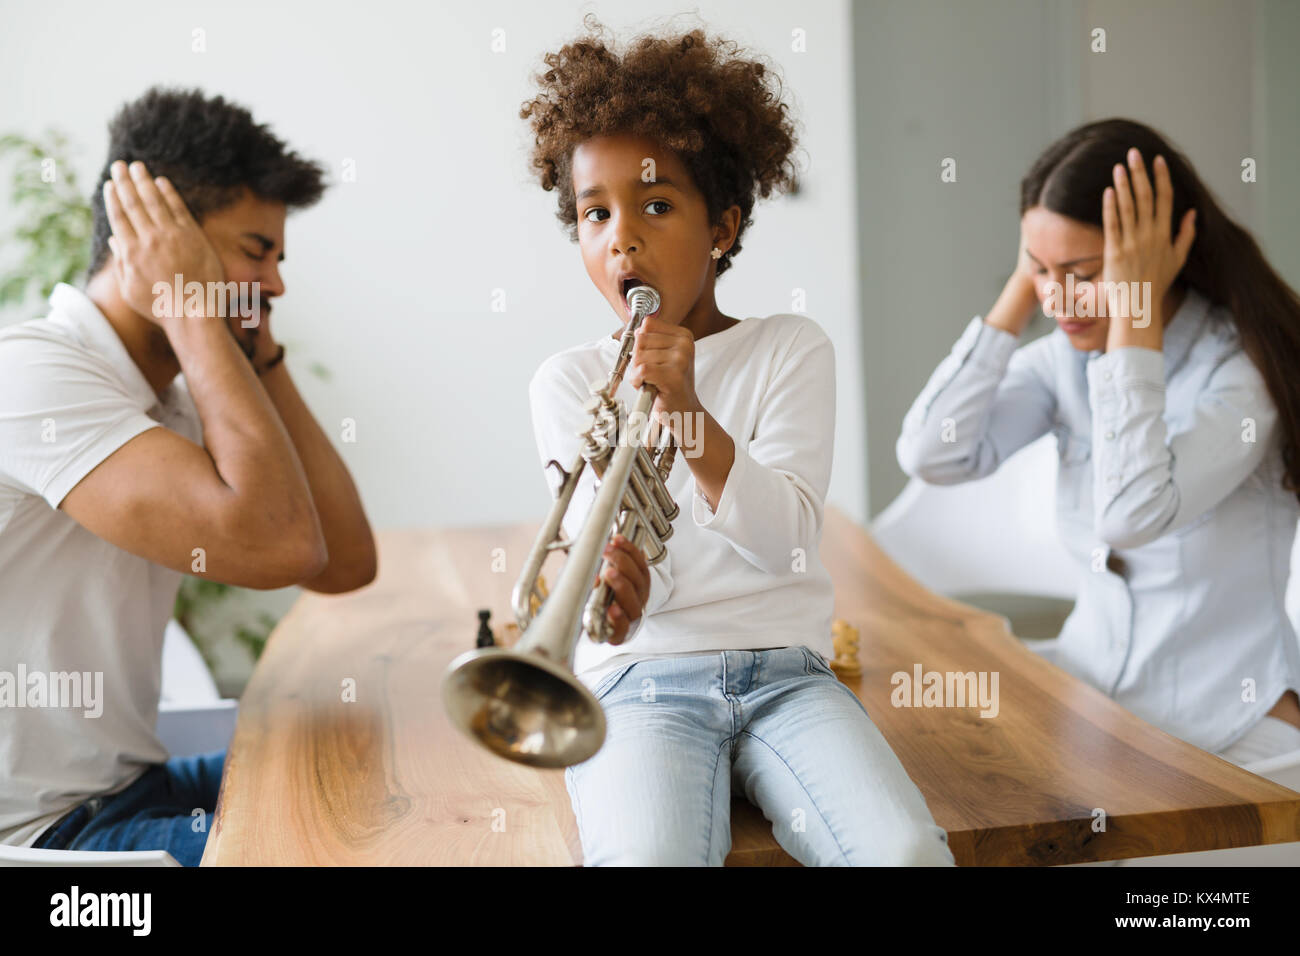 Imagen de los niños haciendo ruido tocando trompeta Foto de stock